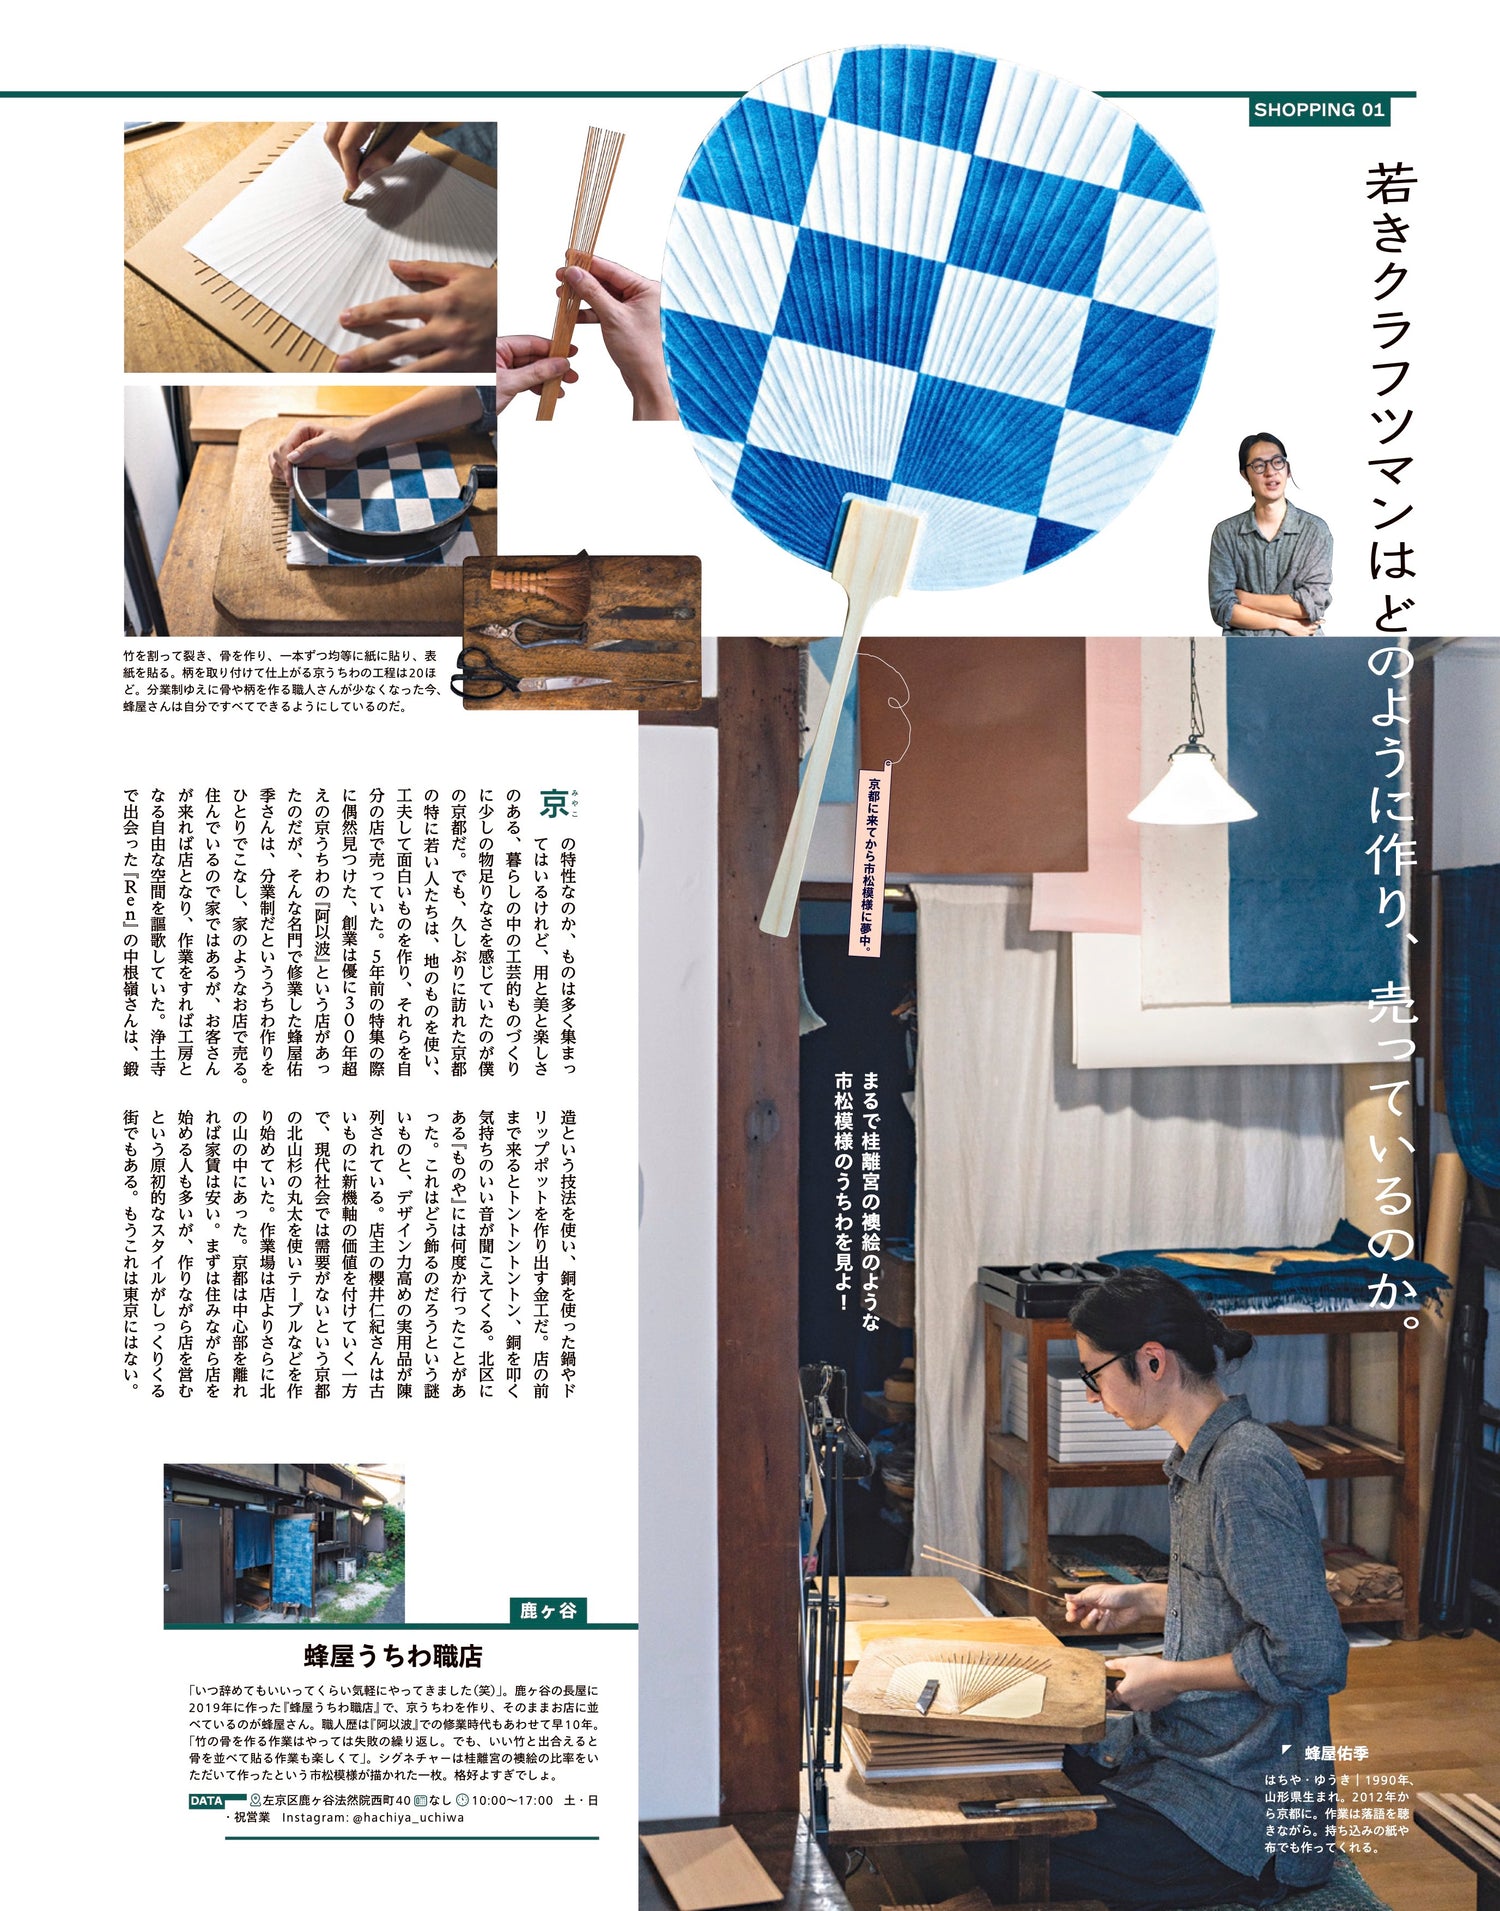 店主で職人の蜂屋佑季さんは32歳。「若きクラフツマンはどのように作り、売っているのか。」というページで取材しています。